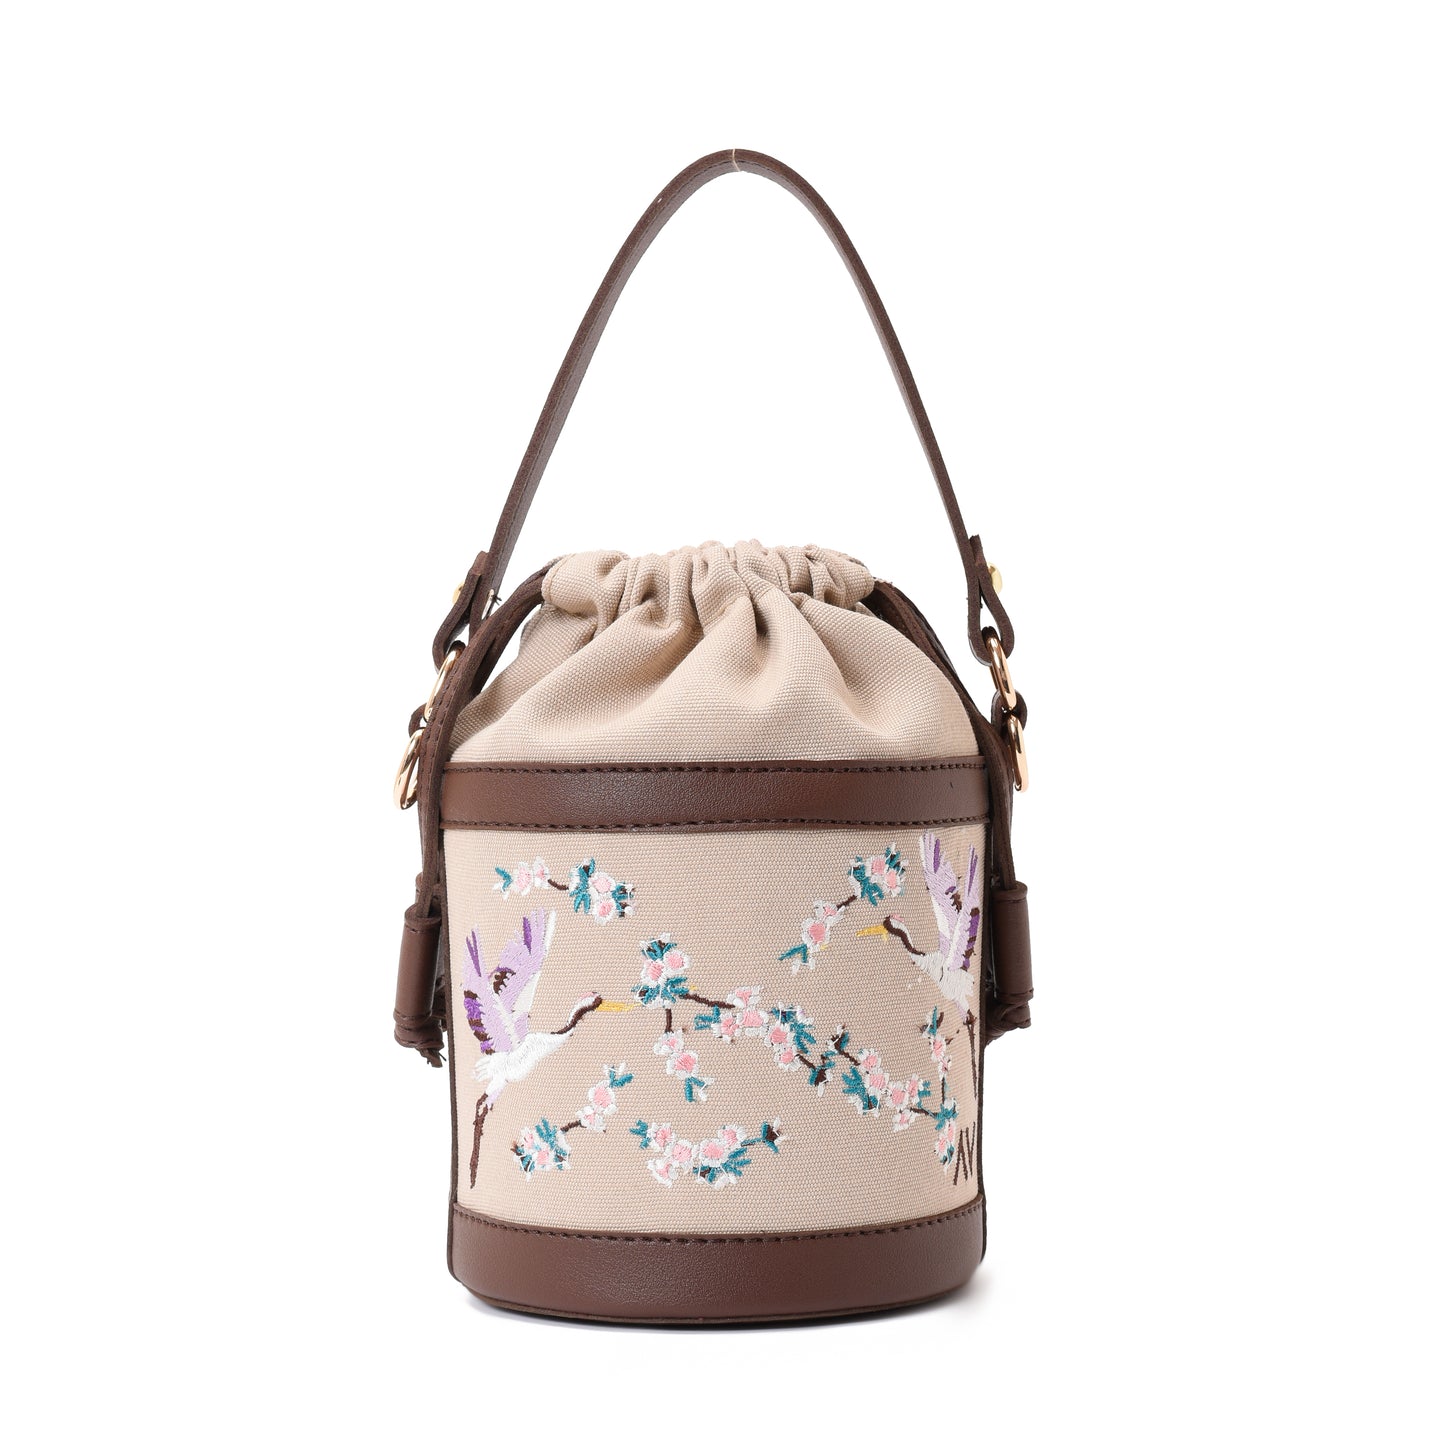 Retro Bucket Swan Handbag with Brown belt -Code 915